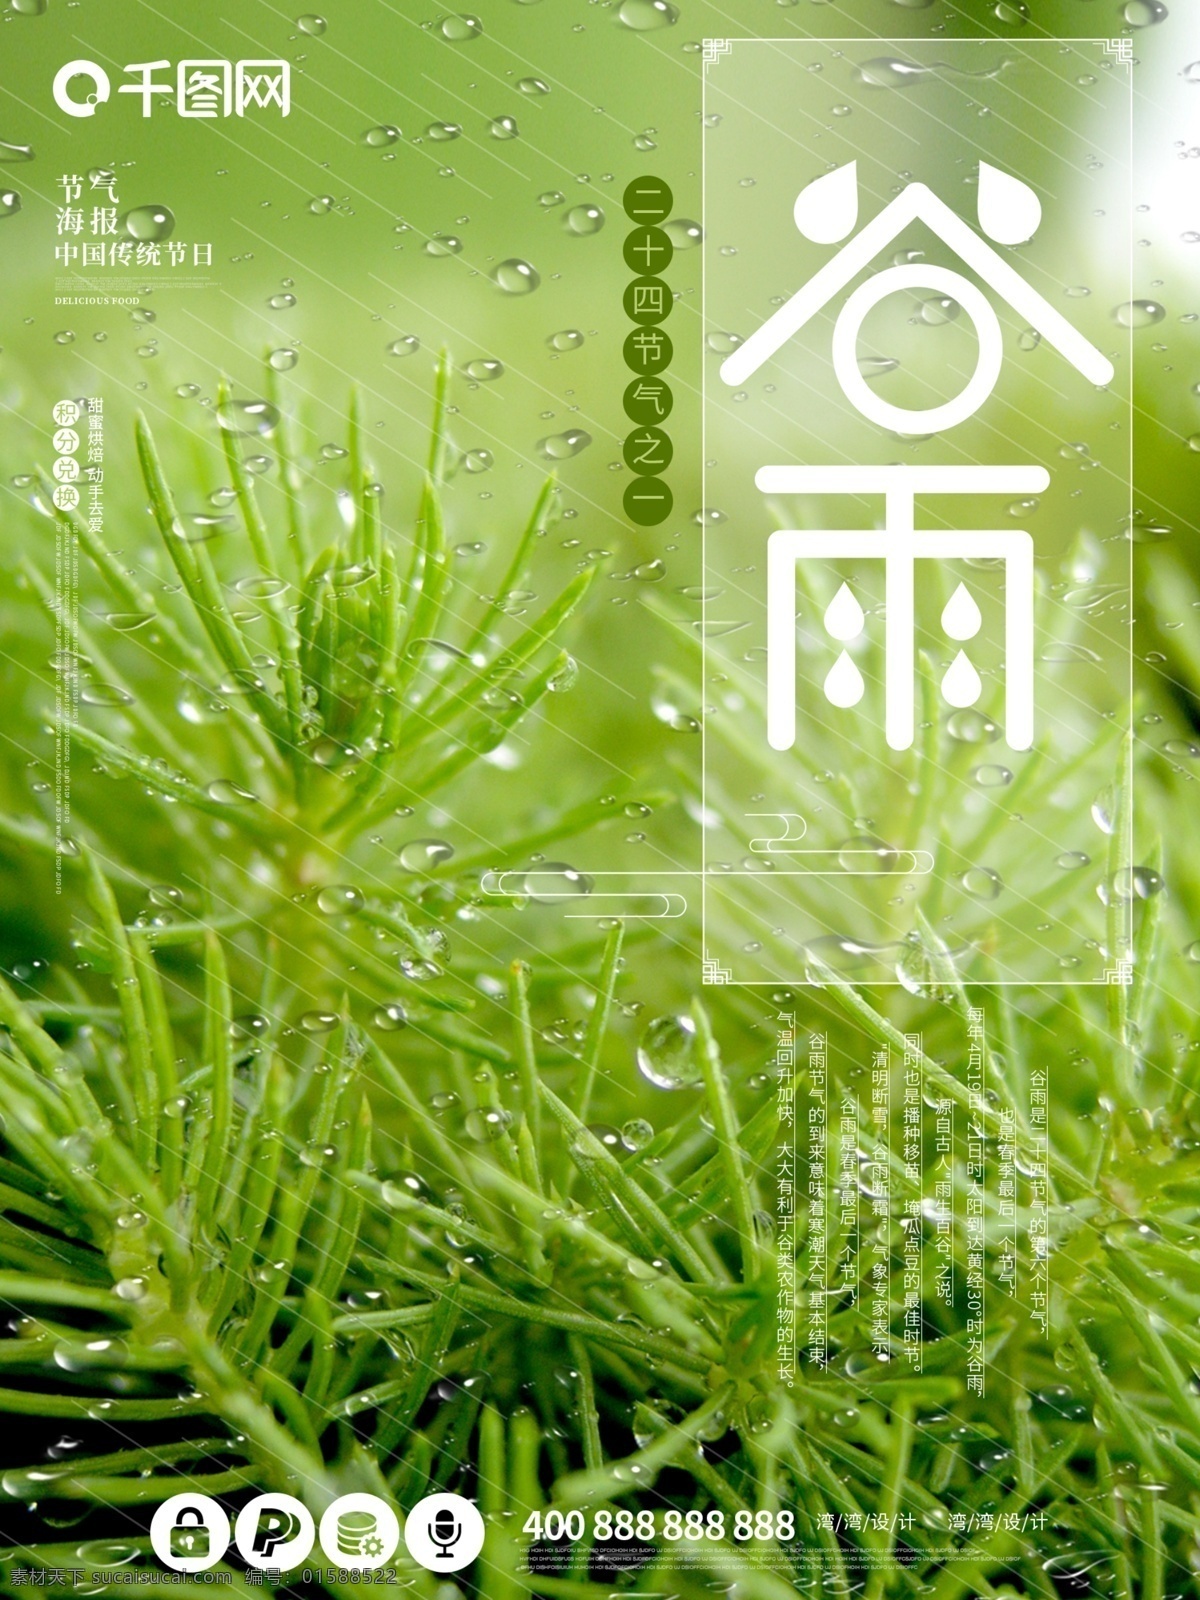 谷雨 中国 传统节日 节气 原创 大气 创意 海报 小清新 下雨 绿色 播种